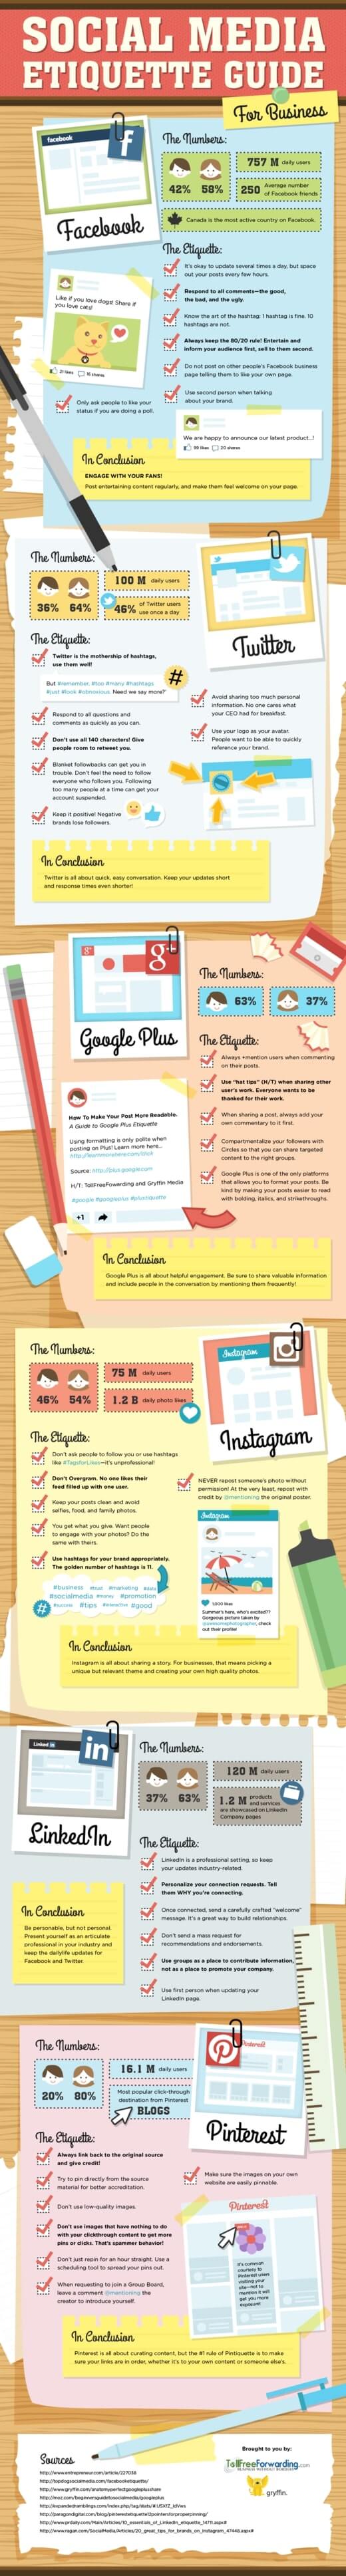 Social Media Etiquette Guide